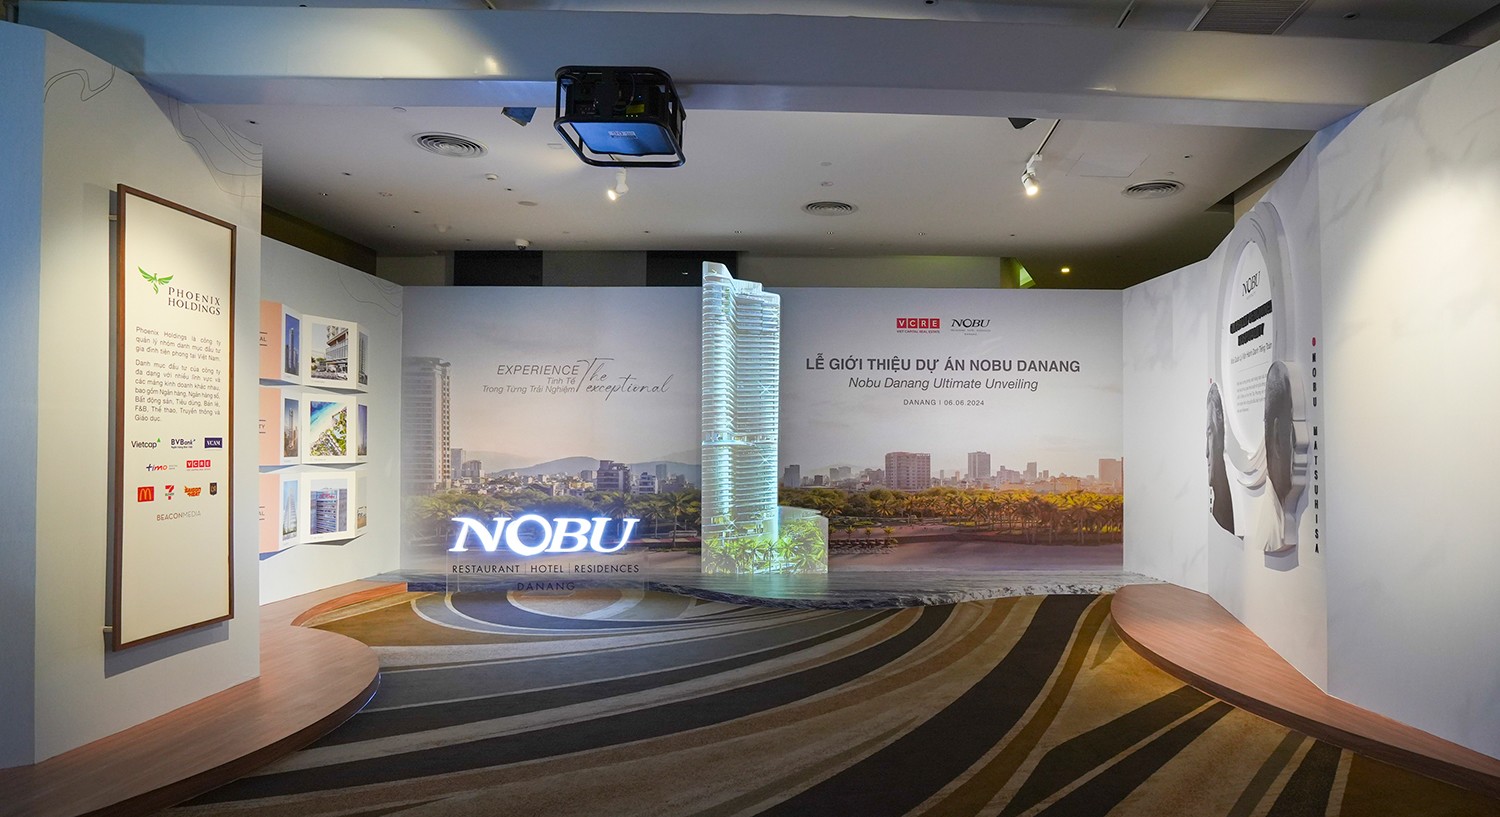 Lễ Giới thiệu dự án Nobu Danang thu hút gần 400 chuyên viên kinh doanh - 1